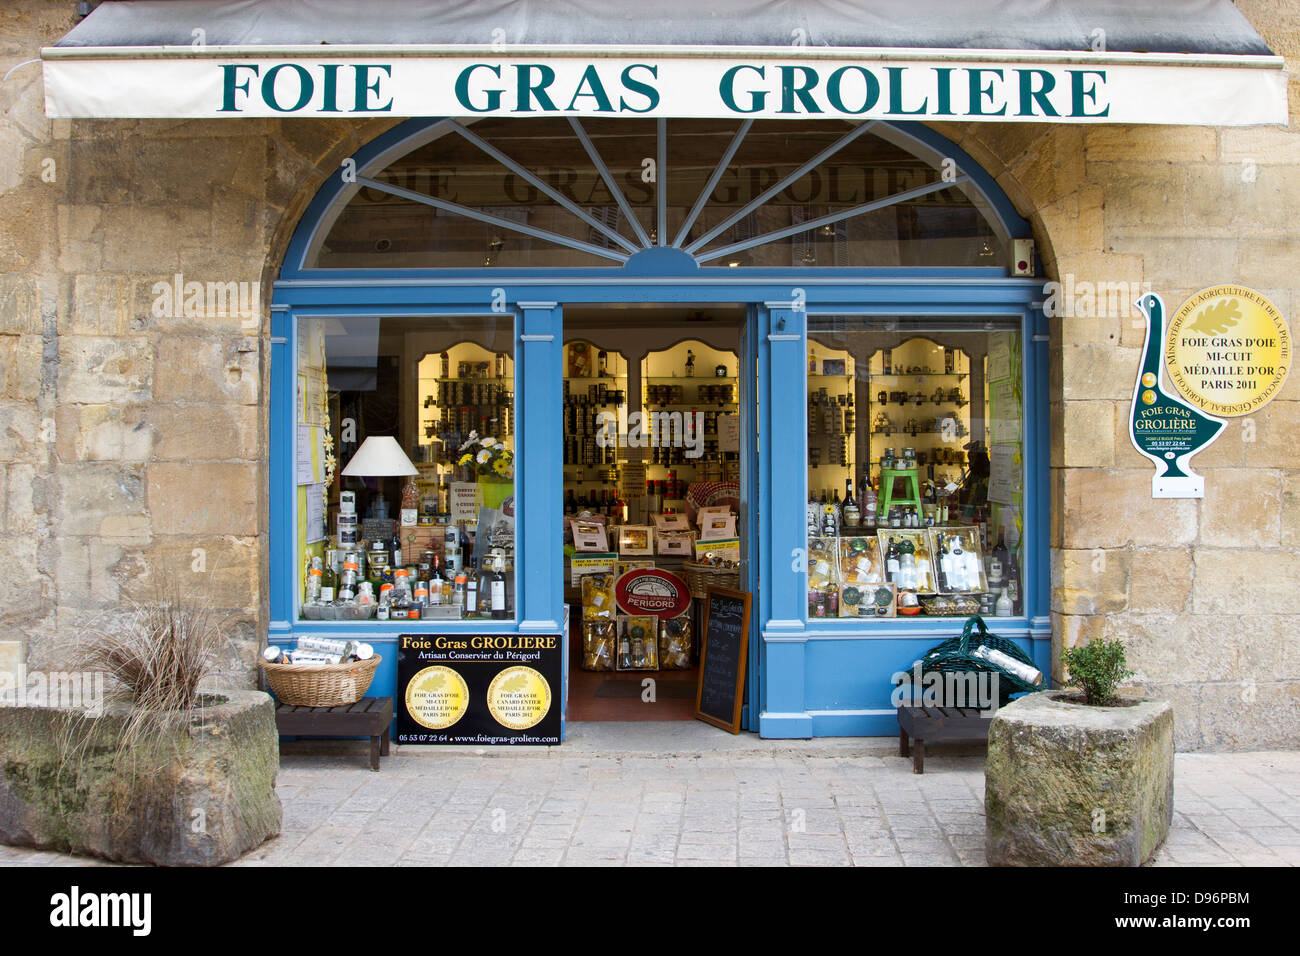 Dans la fenêtre d'affichage attrayant de Foie Gras boutique à Sarlat, Dordogne région de France Banque D'Images